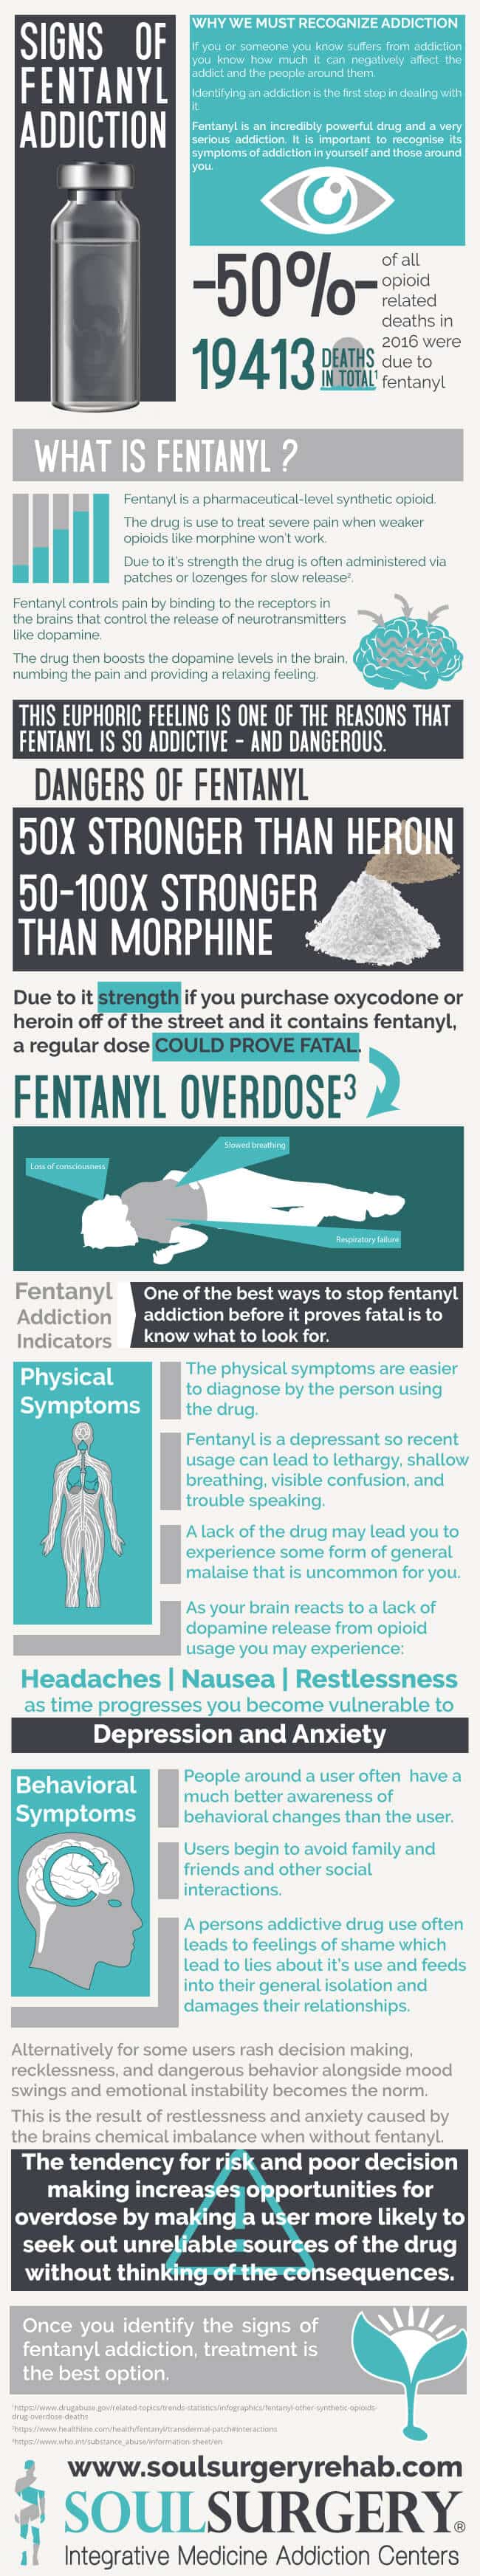 signs of fentanyl addiction, fentanyl addiction treatment